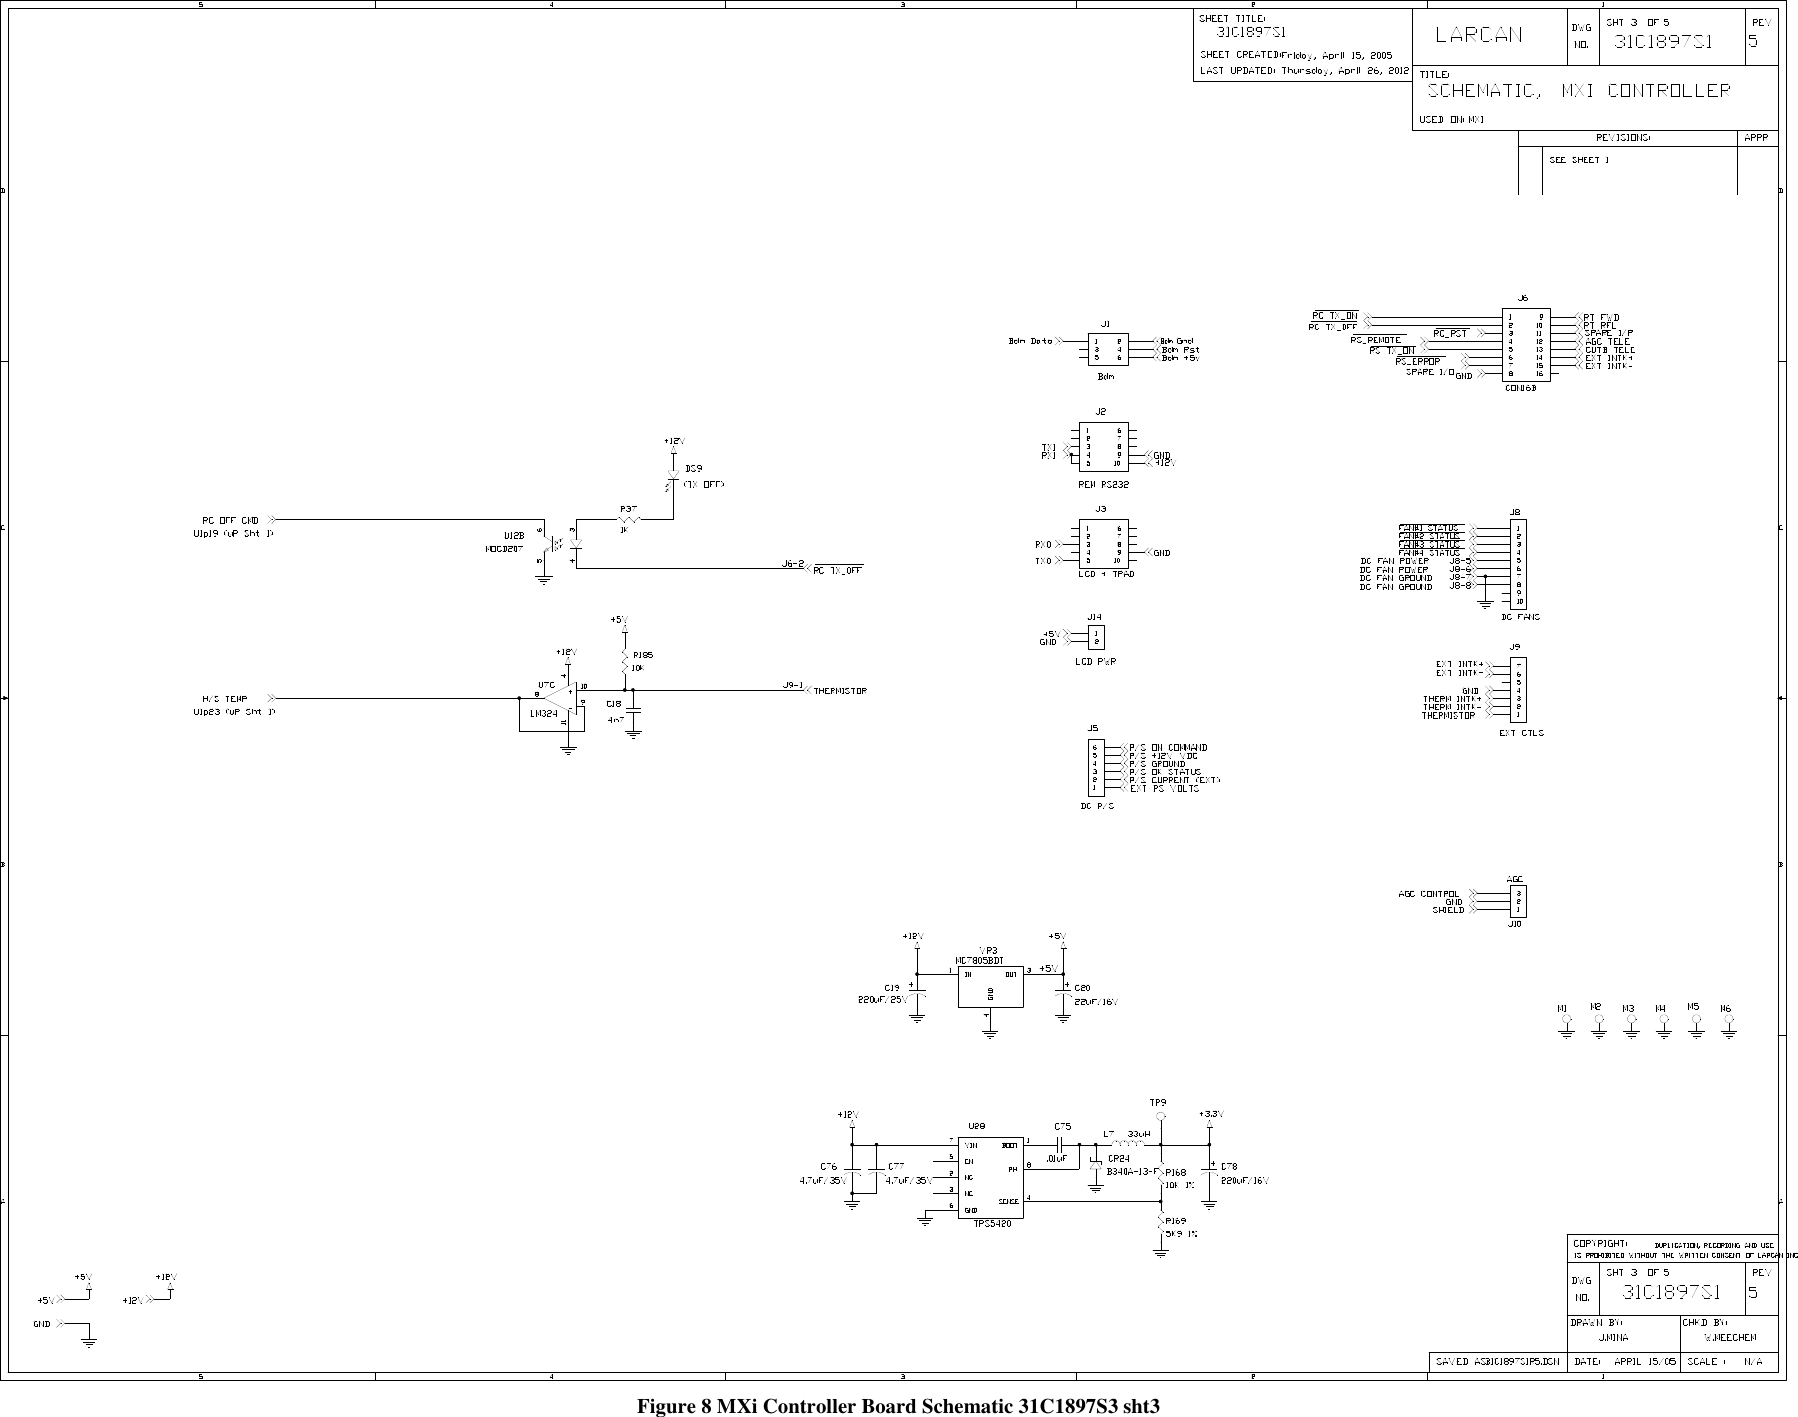    Figure 8 MXi Controller Board Schematic 31C1897S3 sht3  